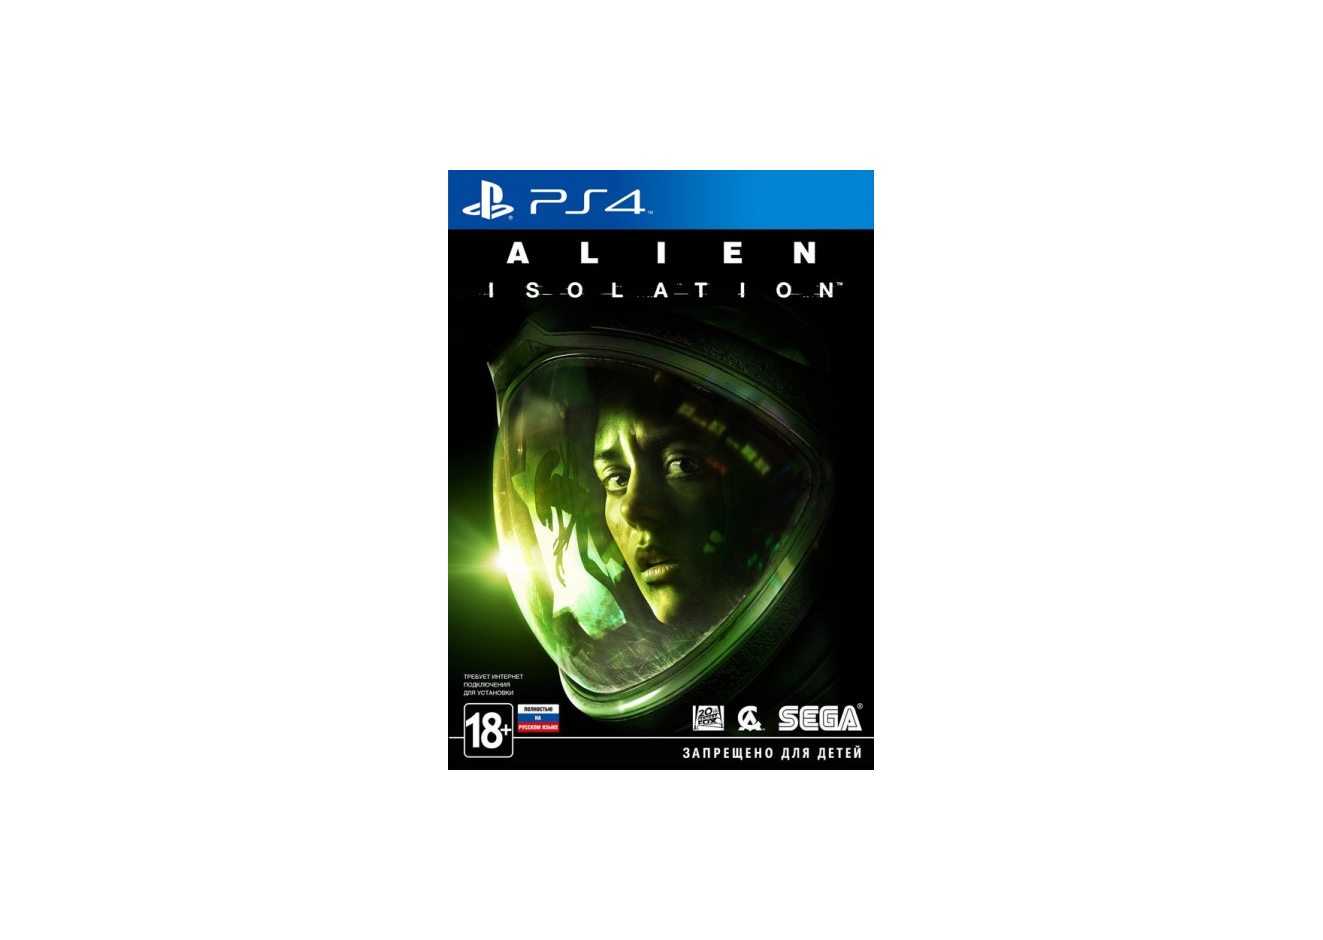 Aliens ps4. Alien: Isolation (ps4). Alien Isolation Sony ps4. Alien Isolation ps4 Pro. Игра для ps4 Alien: Isolation.